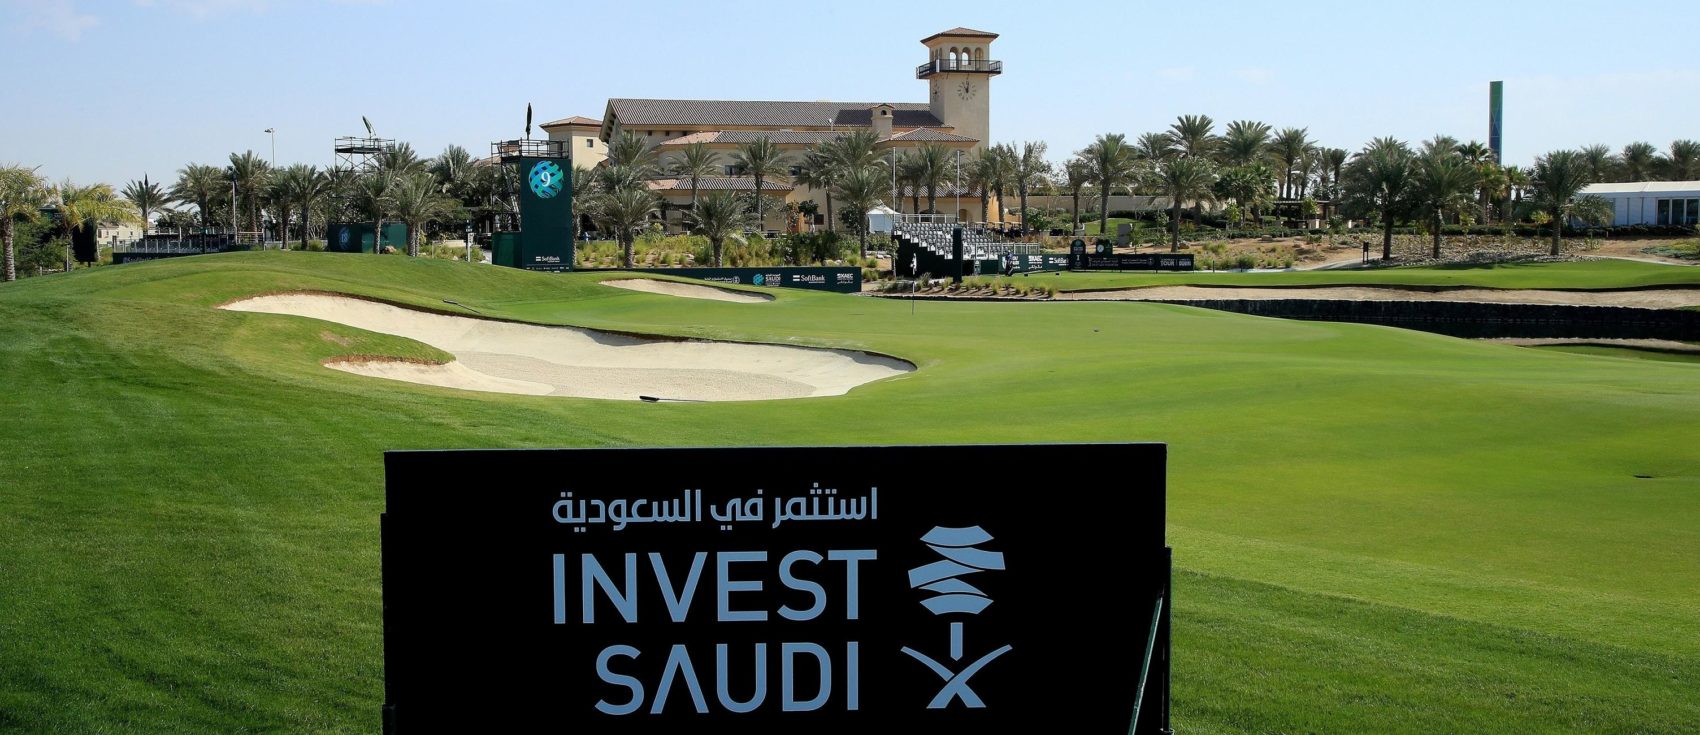 Invest Saudi header- 2020 Saudi International